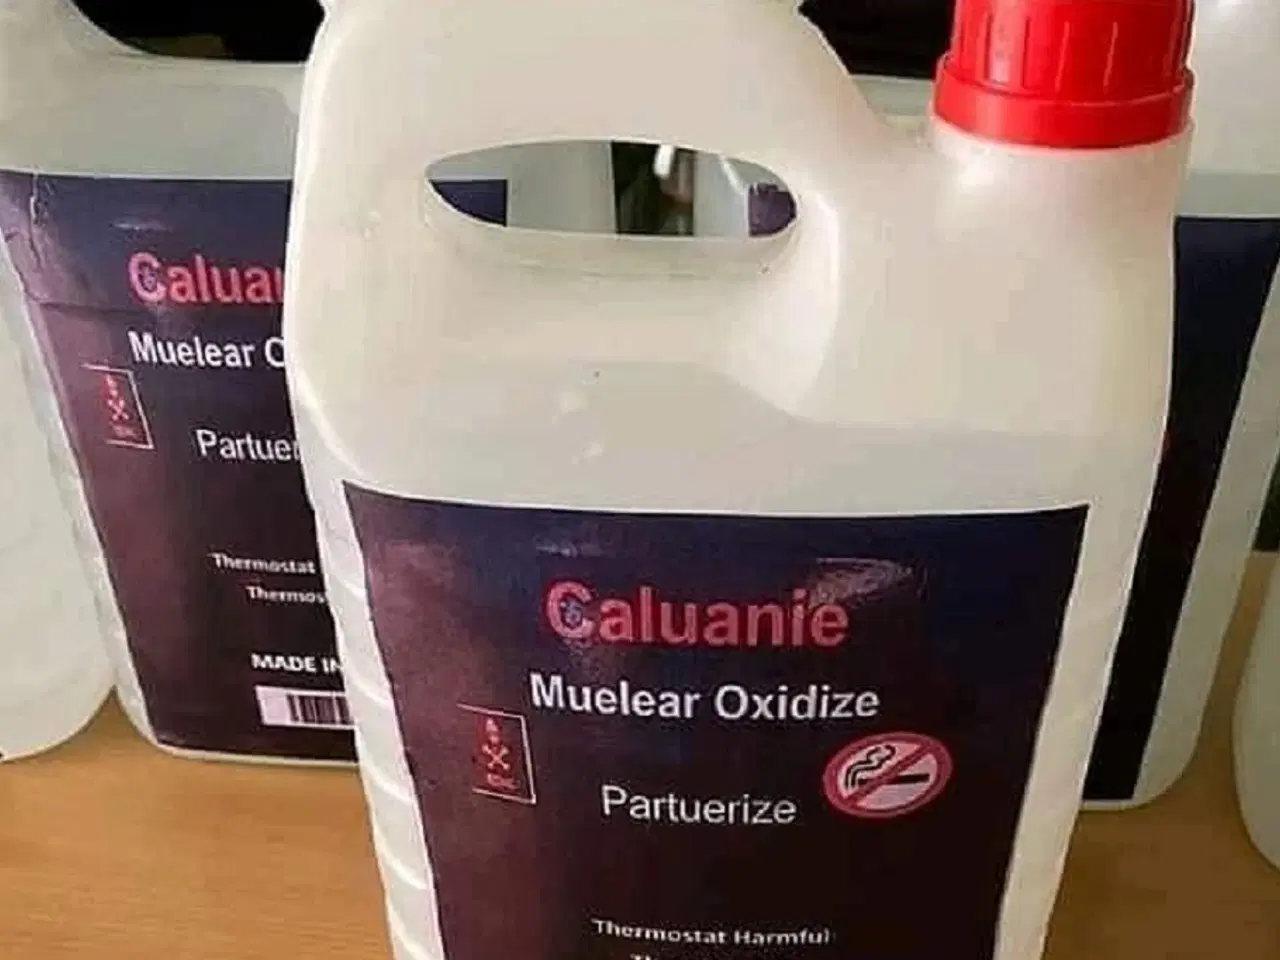 Billede 1 - Køb Caluanie Muelear Oxidize til salg